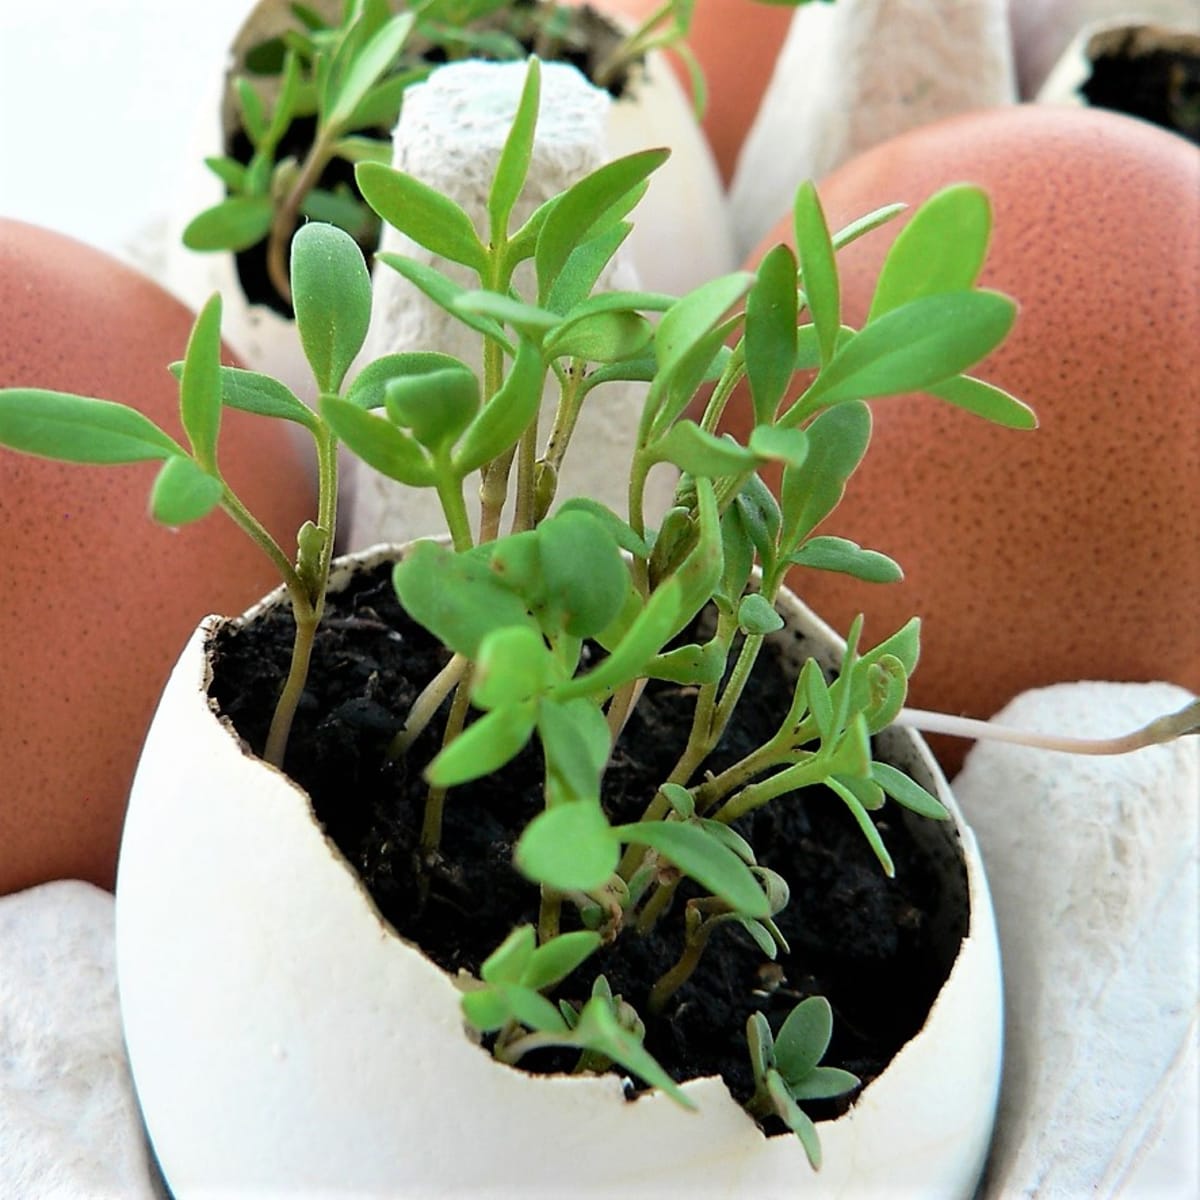 Pro některé byliny (např. řeřicha setá) je ideální výsev do vaječných skořápek